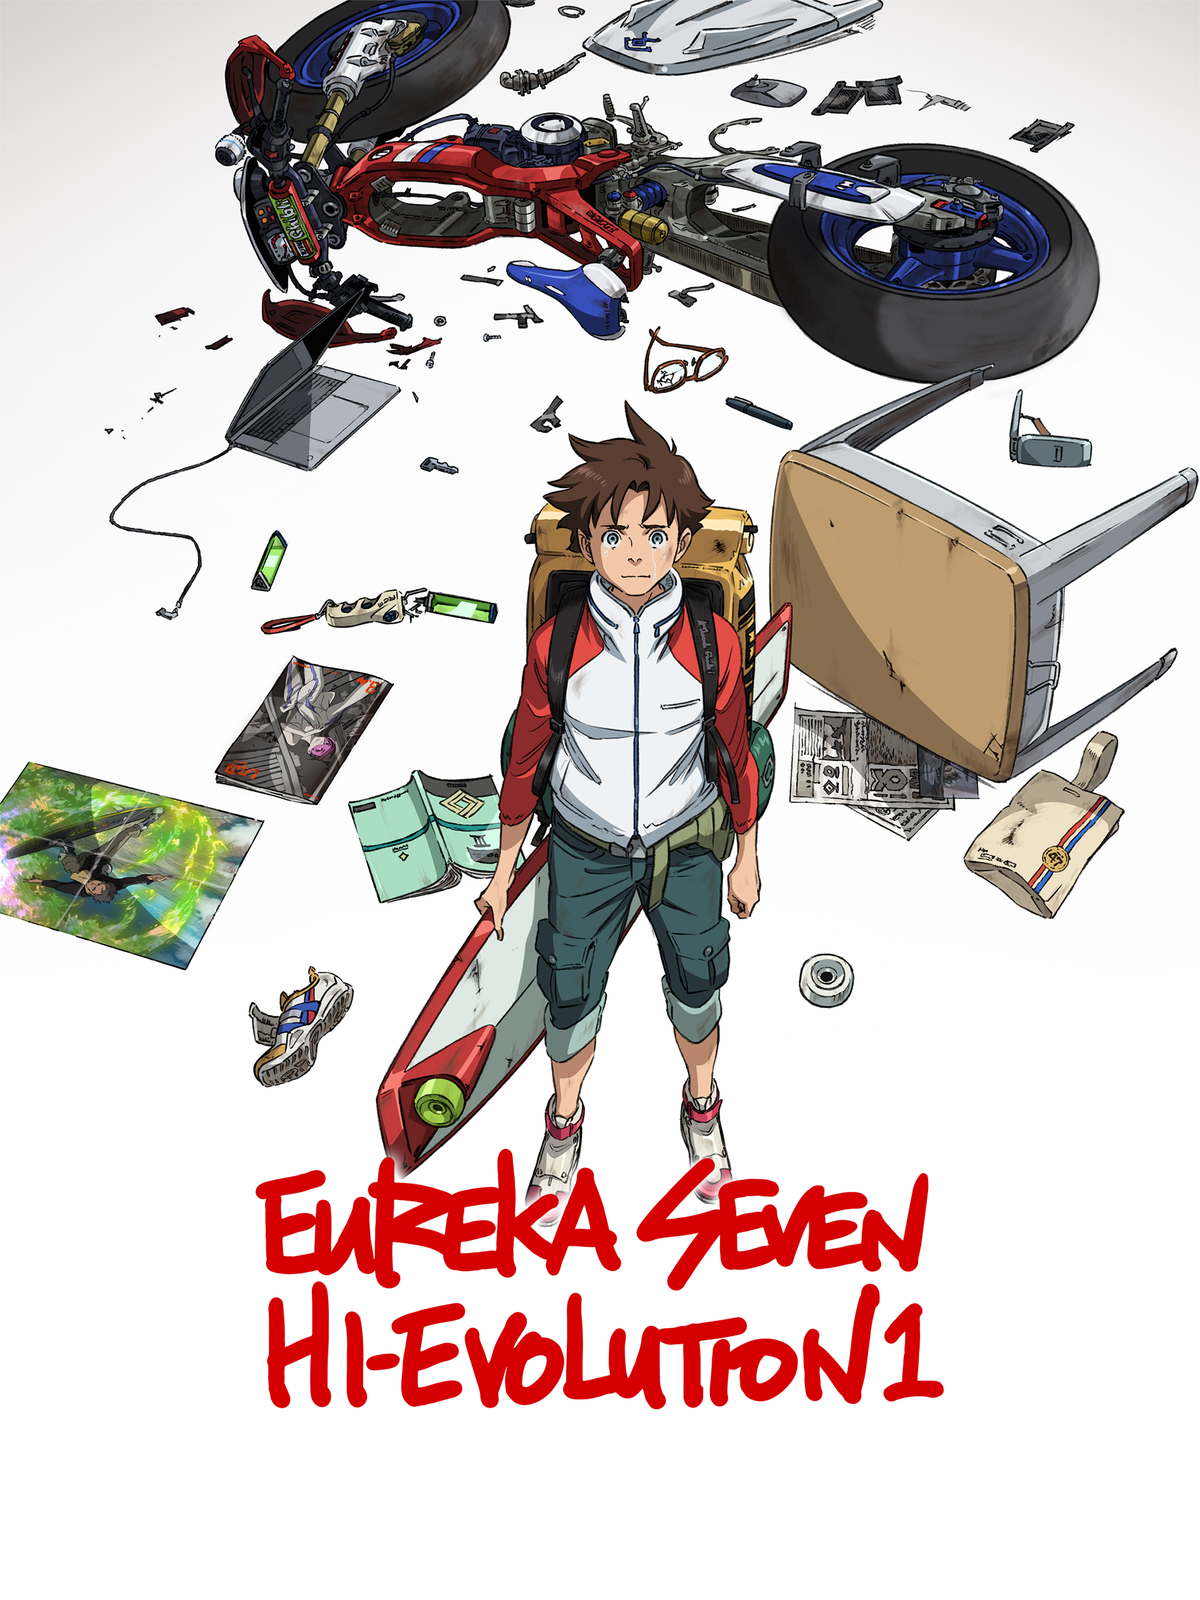 ดูหนังออนไลน์ฟรี Eureka Seven Hi-Evolution 1 ยูเรก้า เซเว่น ไฮเอโวลูชั่น 1 (2017)